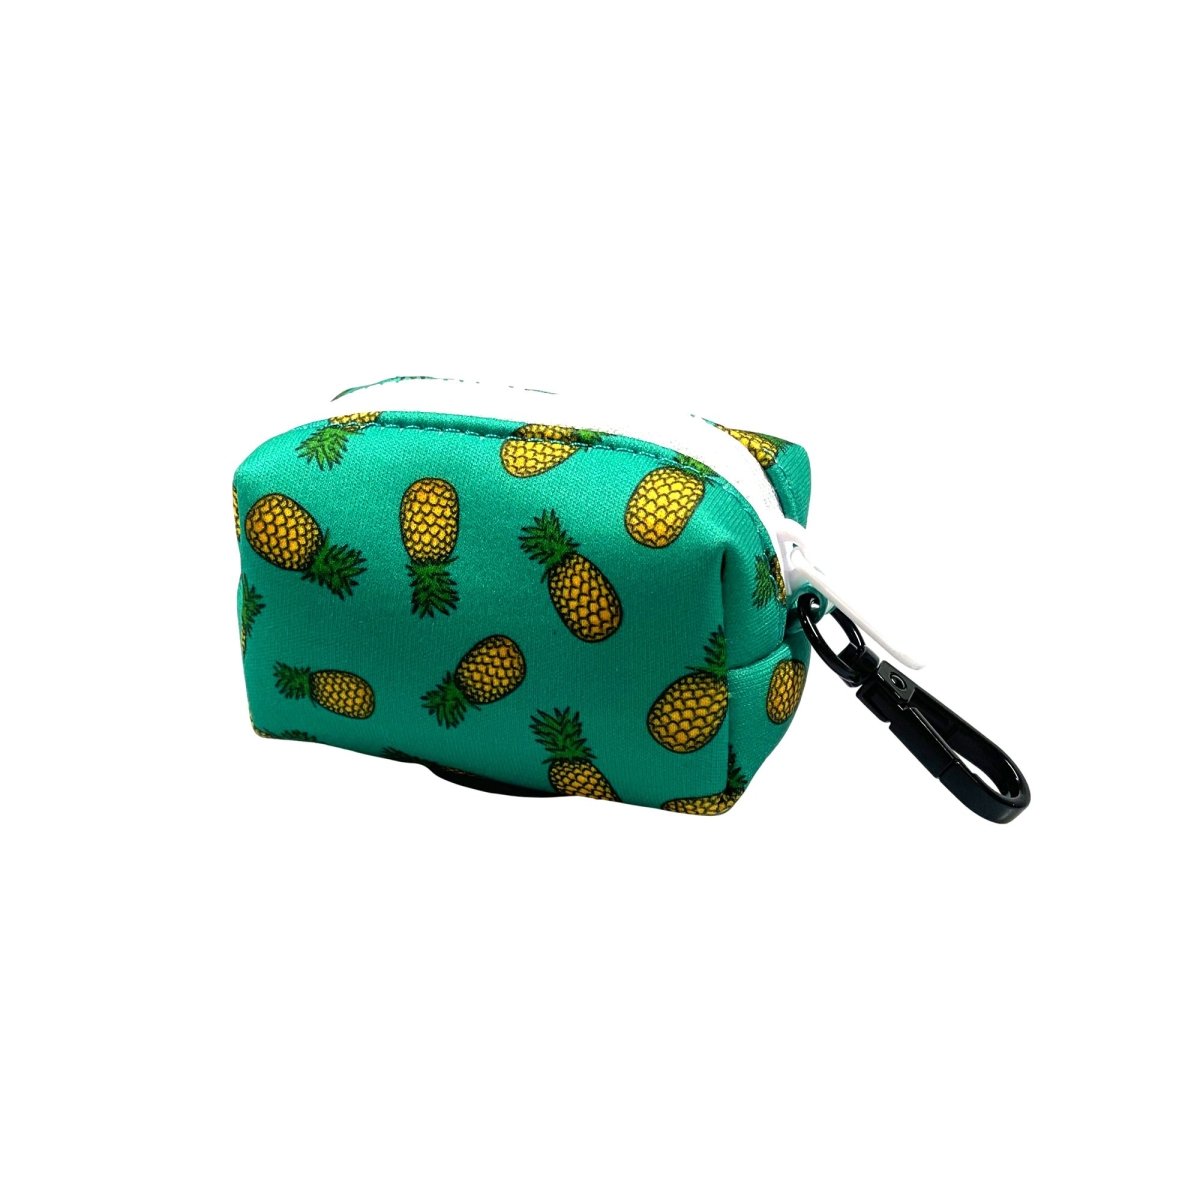 aloha-poop-bag-holder-173674_1800x1800